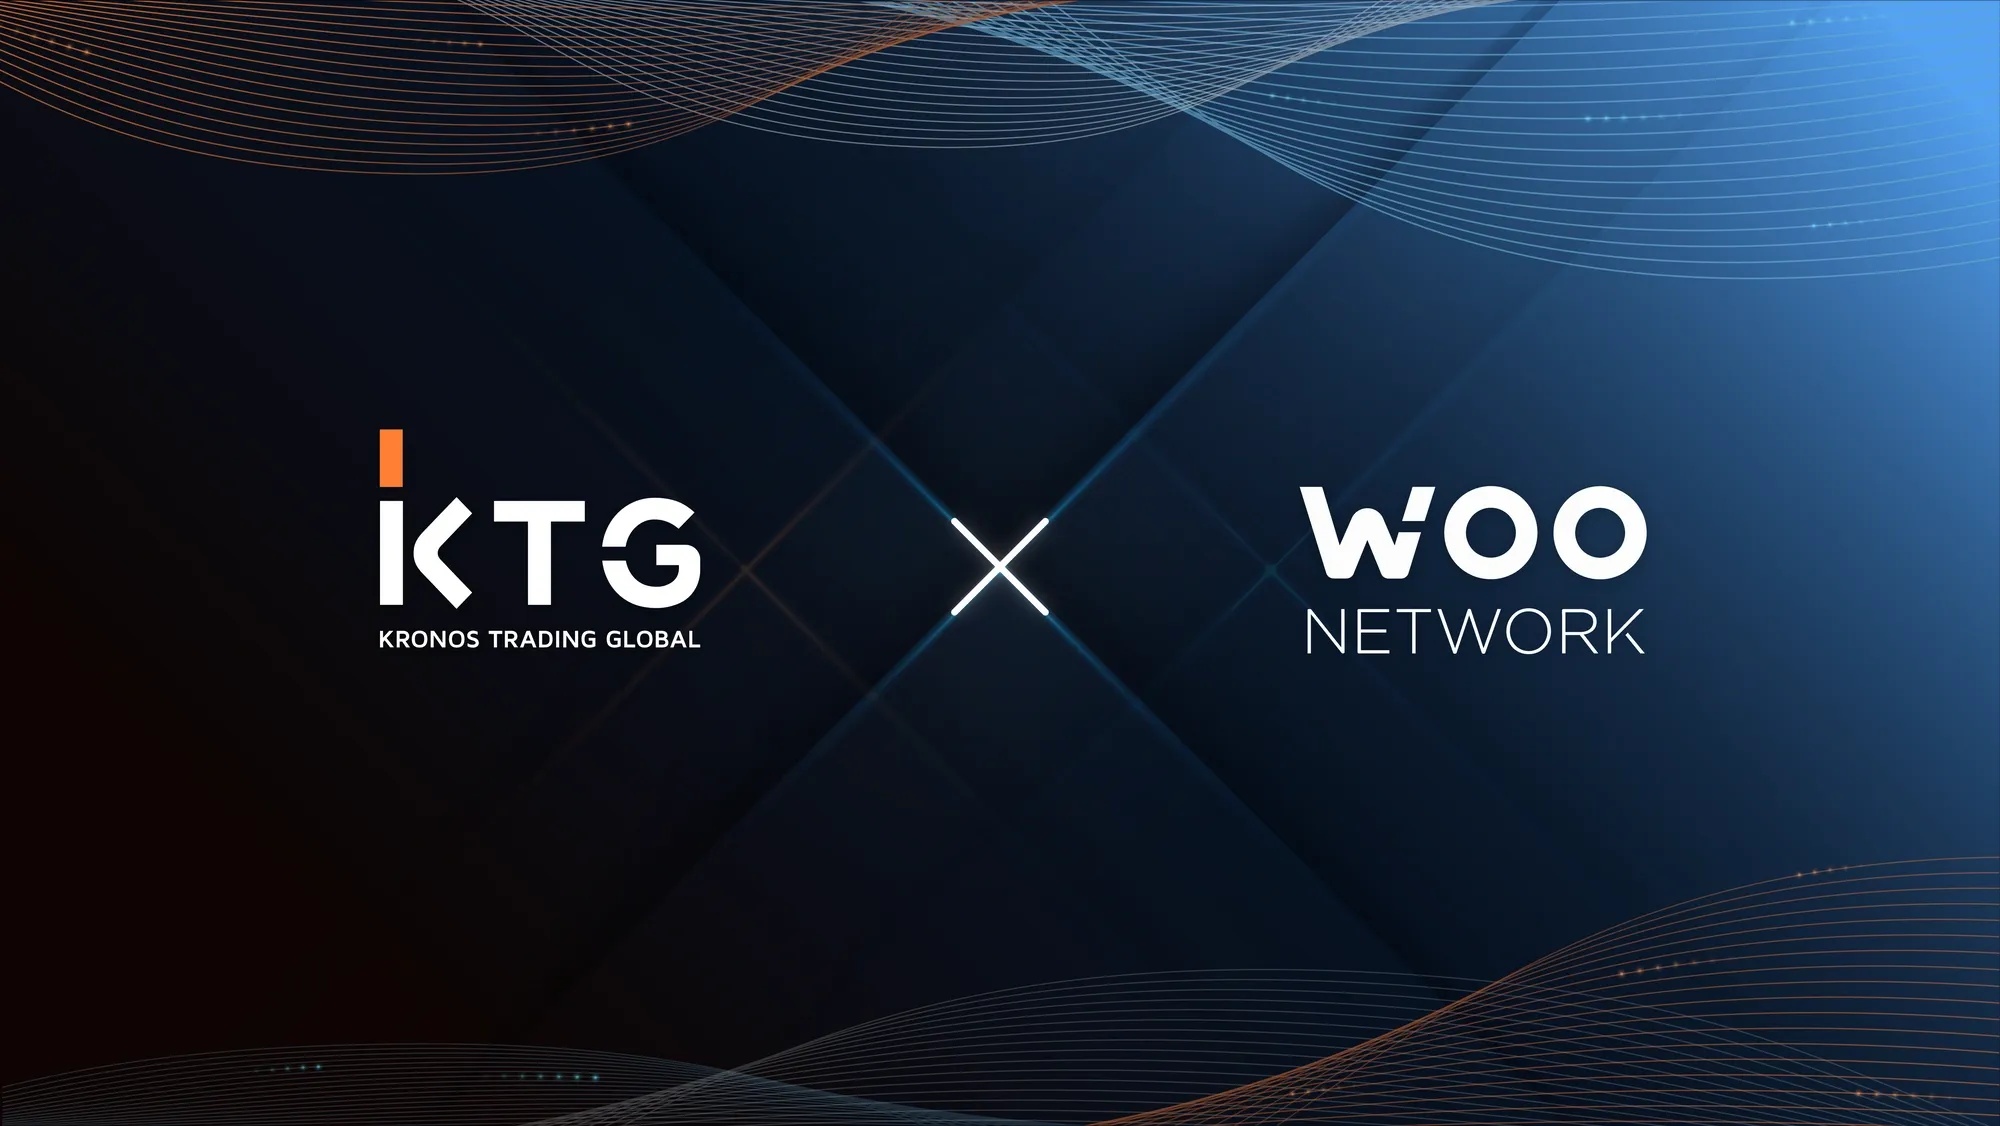 WOO Network оголошує про співпрацю з KTG, яка підвищить продуктивність трейдерів